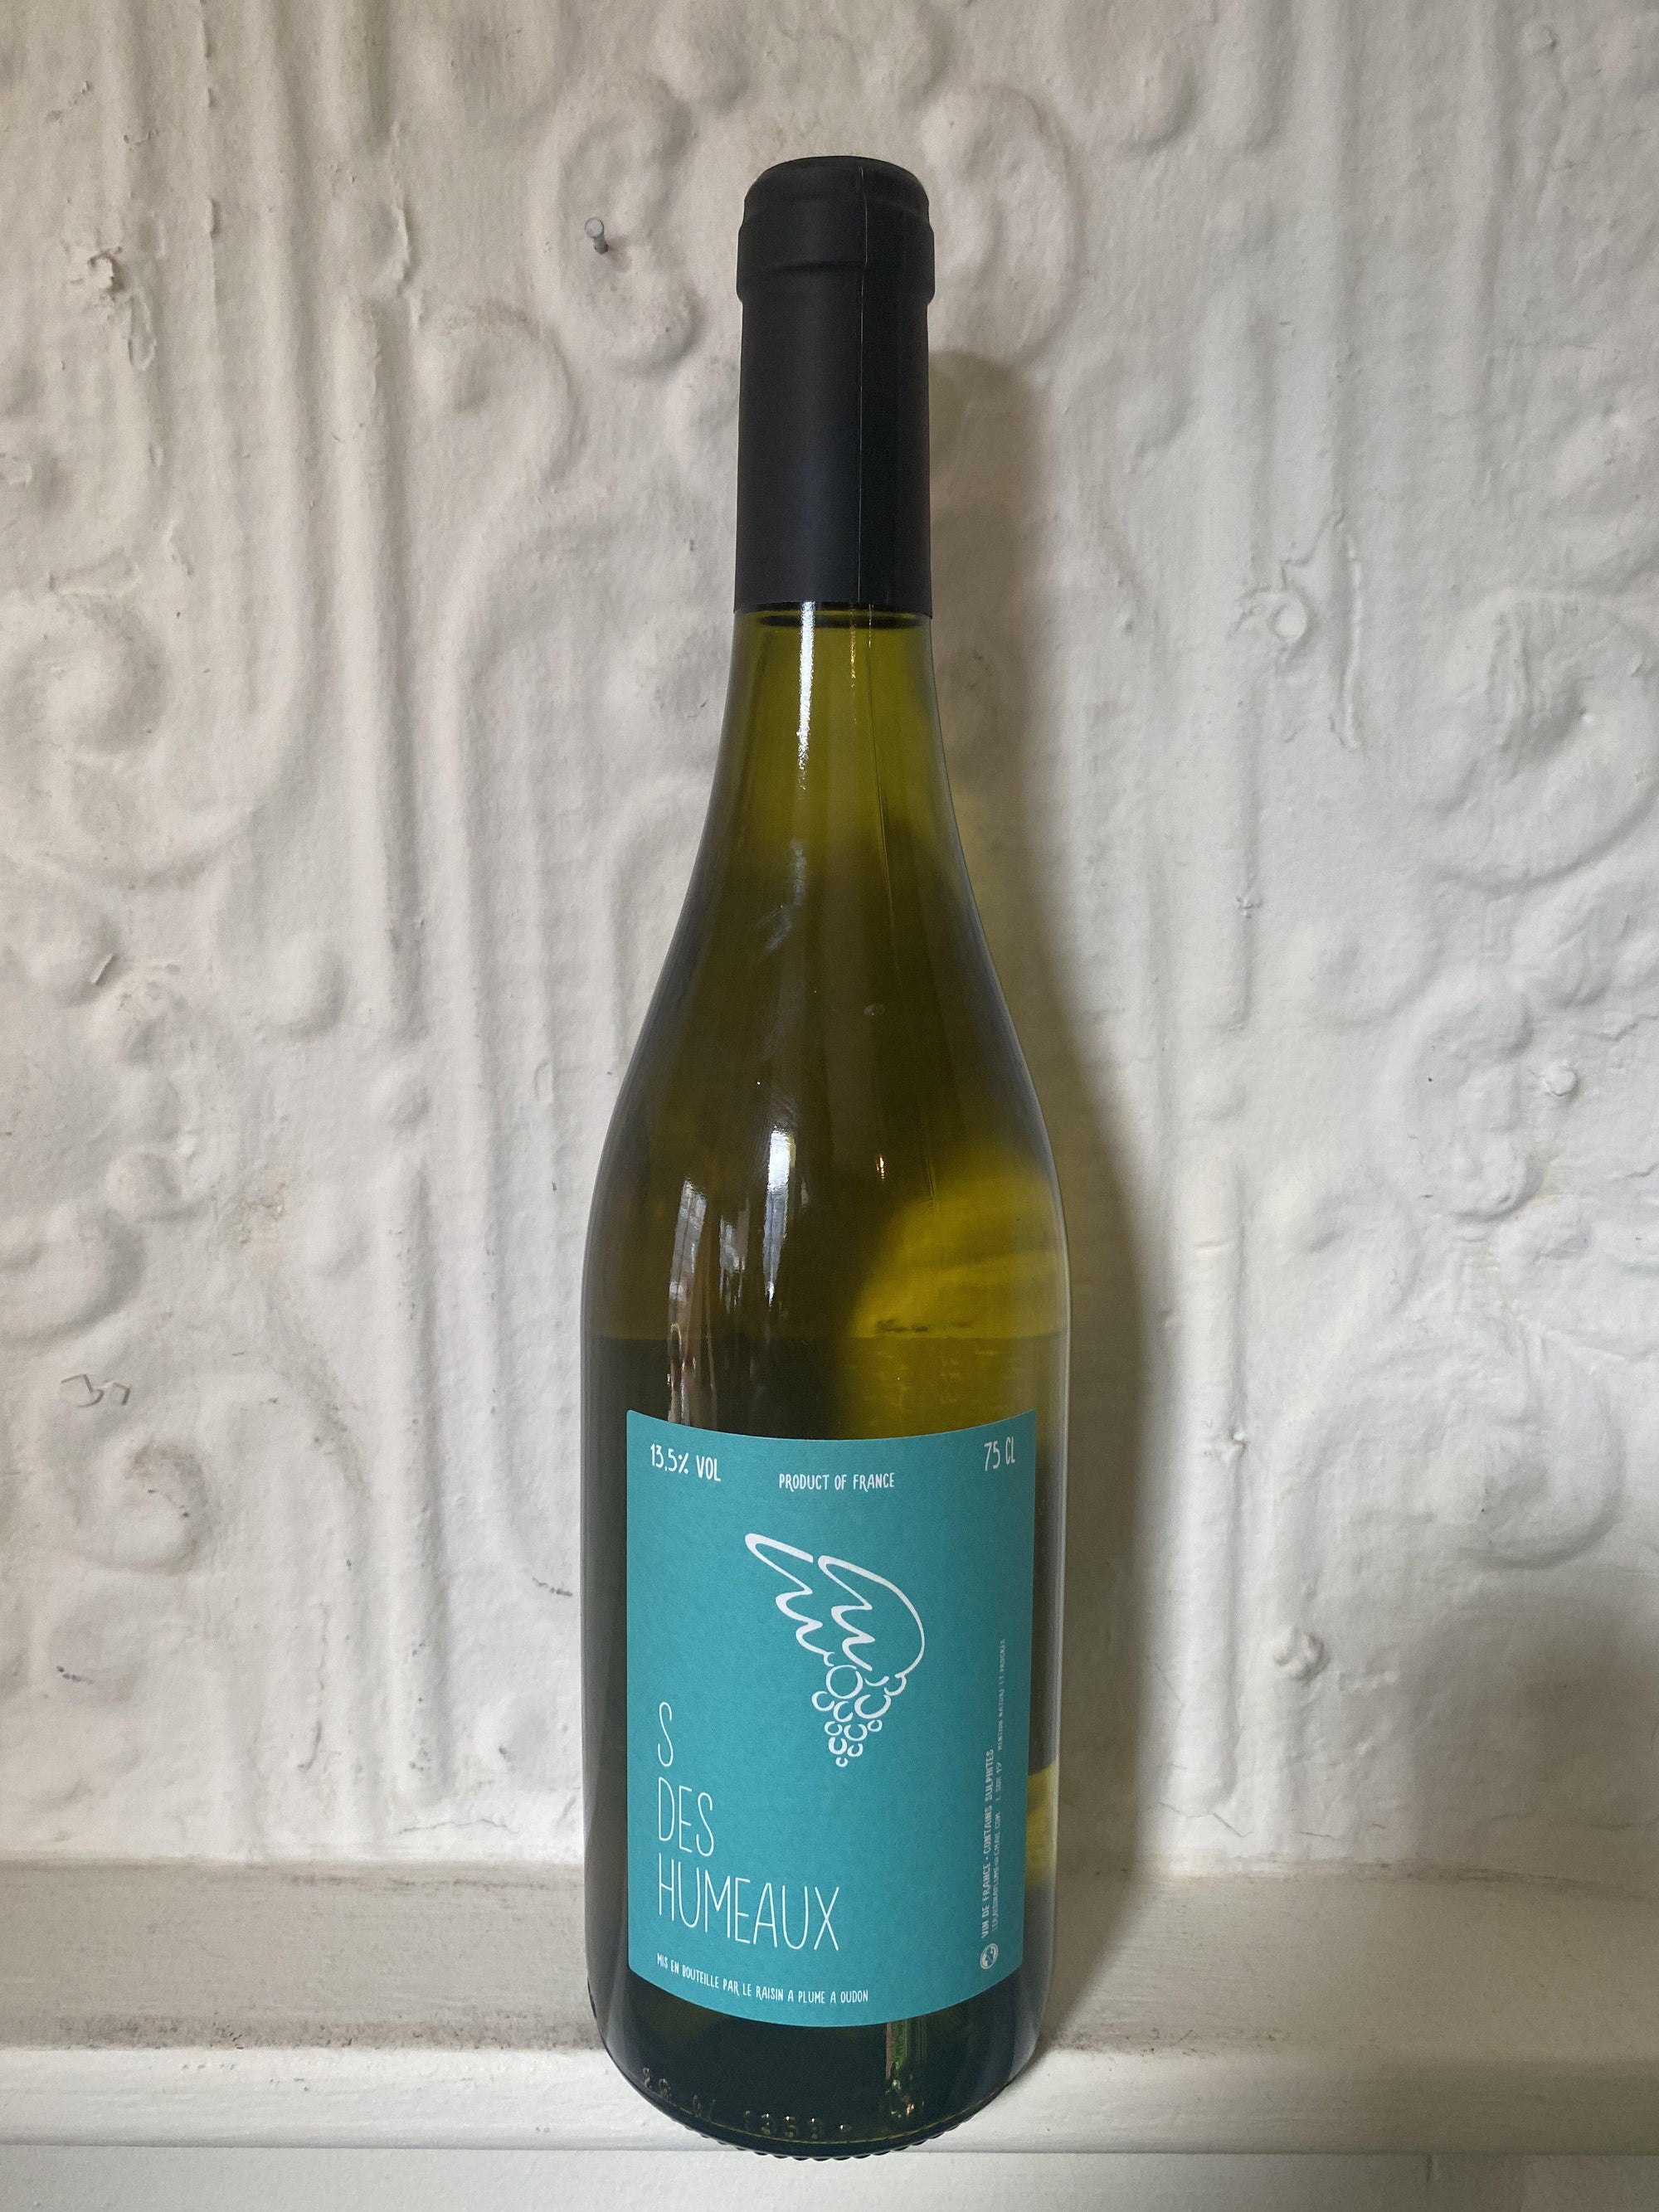 Sauvignon Blanc "S des Humeaux", Le Raisin A Plume 2019 (Loire, France)-Wine-Bibber & Bell